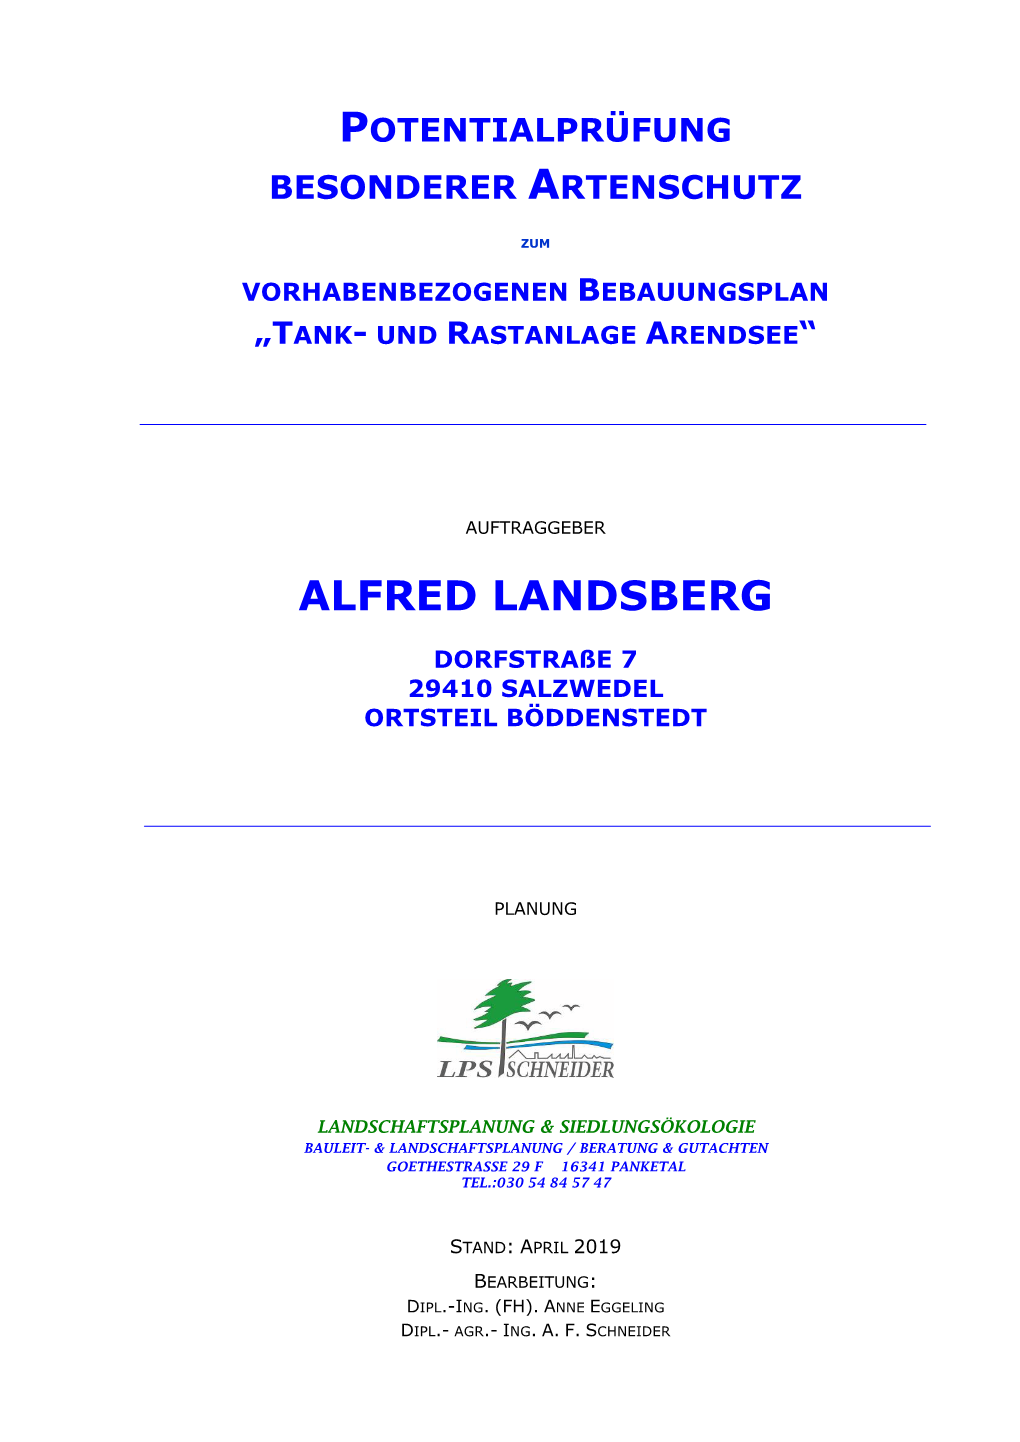 Alfred Landsberg